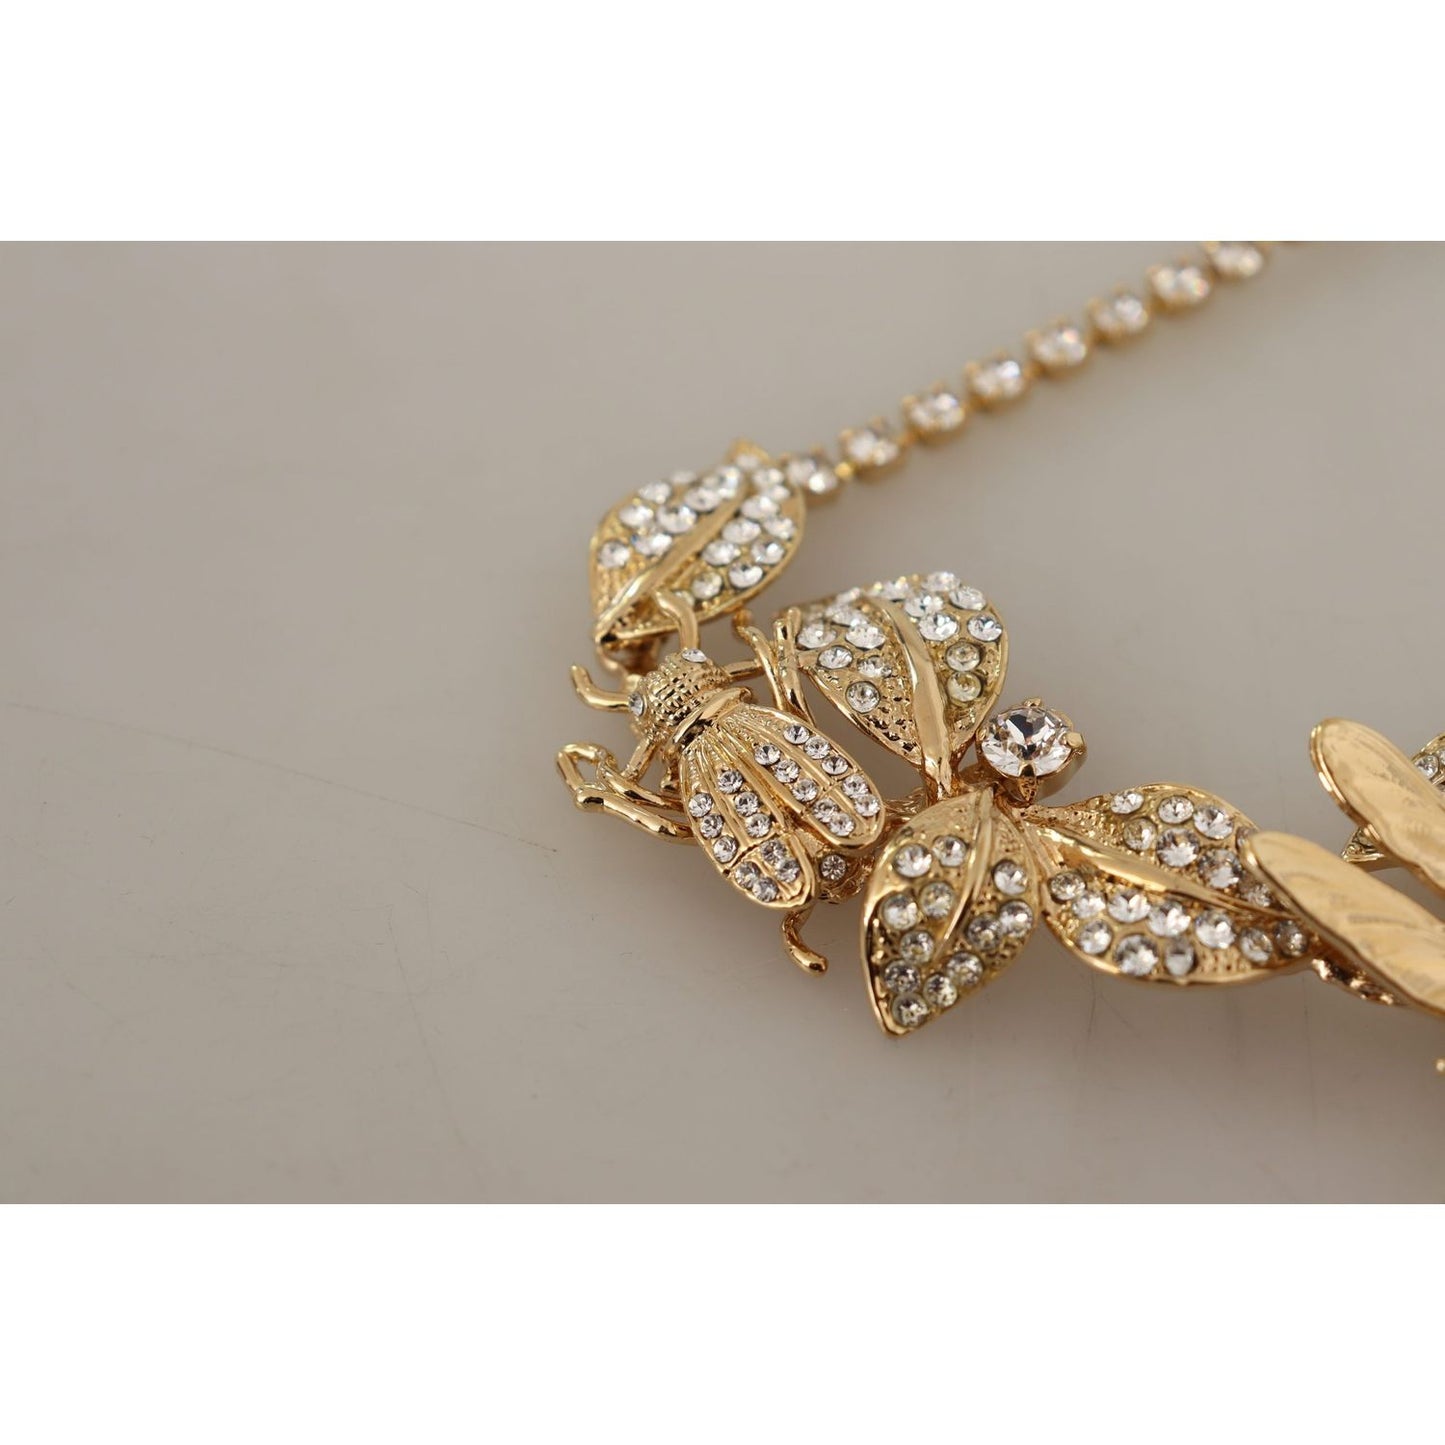 Dolce & Gabbana Elegant Sicily Floral Bug Statement Necklace gold-brass-floral-sicily-crystal-statement-necklace WOMAN NECKLACE IMG_1873-scaled-56563c74-aec.jpg